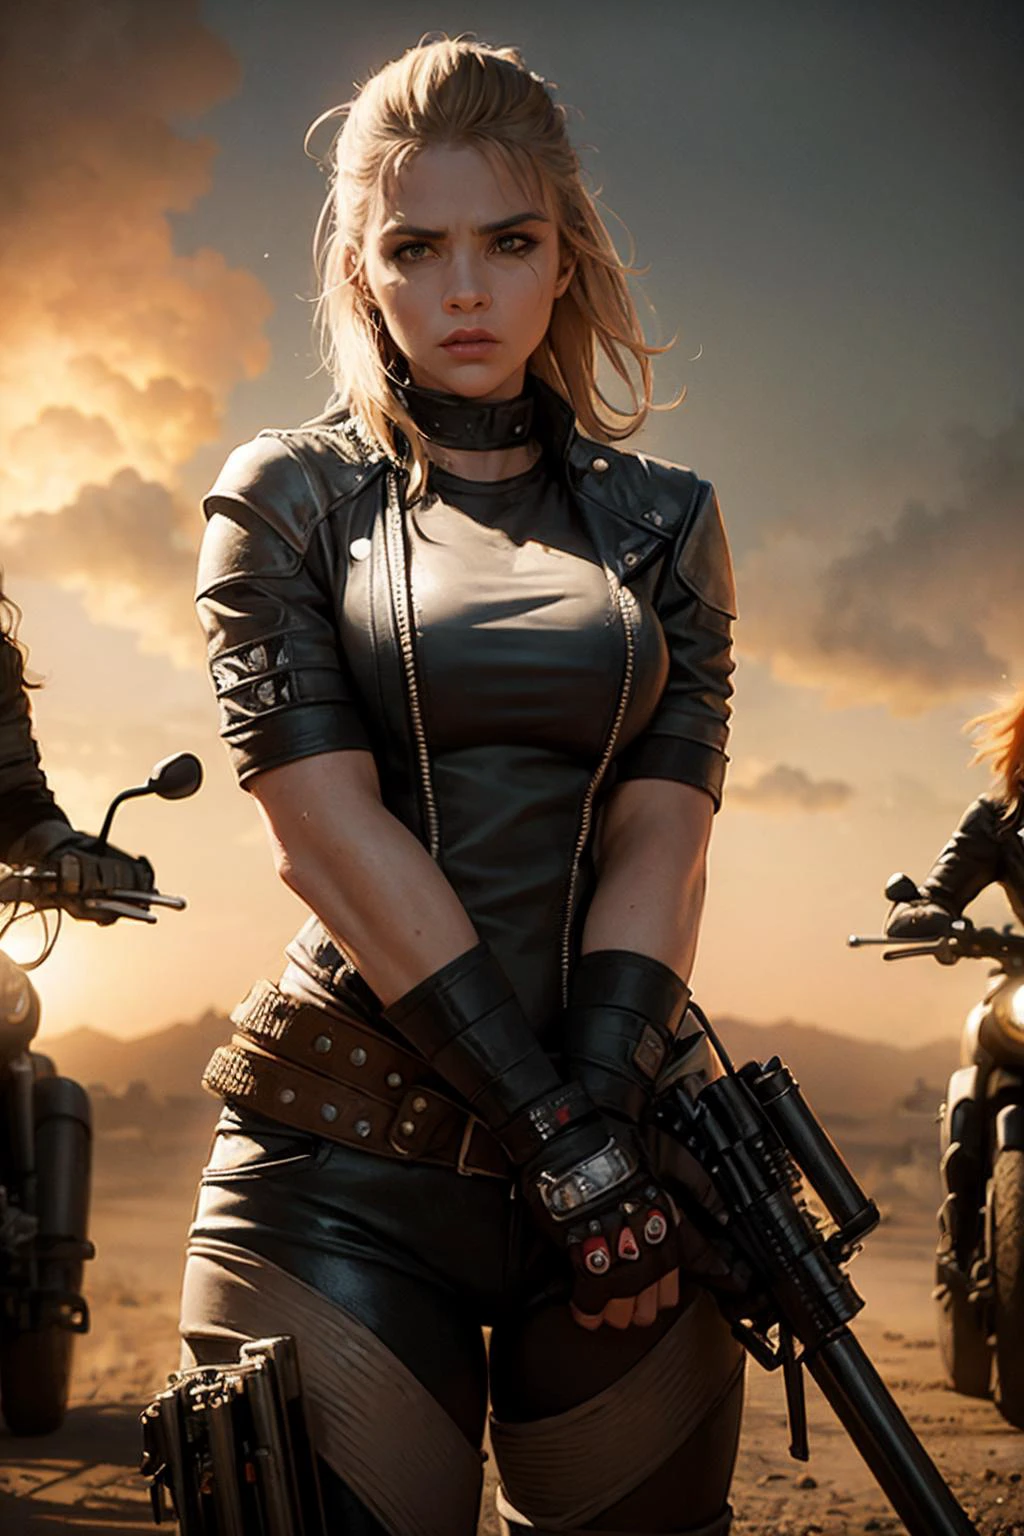 女性摩托车手团伙. 武装和危险. 疯狂的麦克斯艺术风格. 电影灯光.